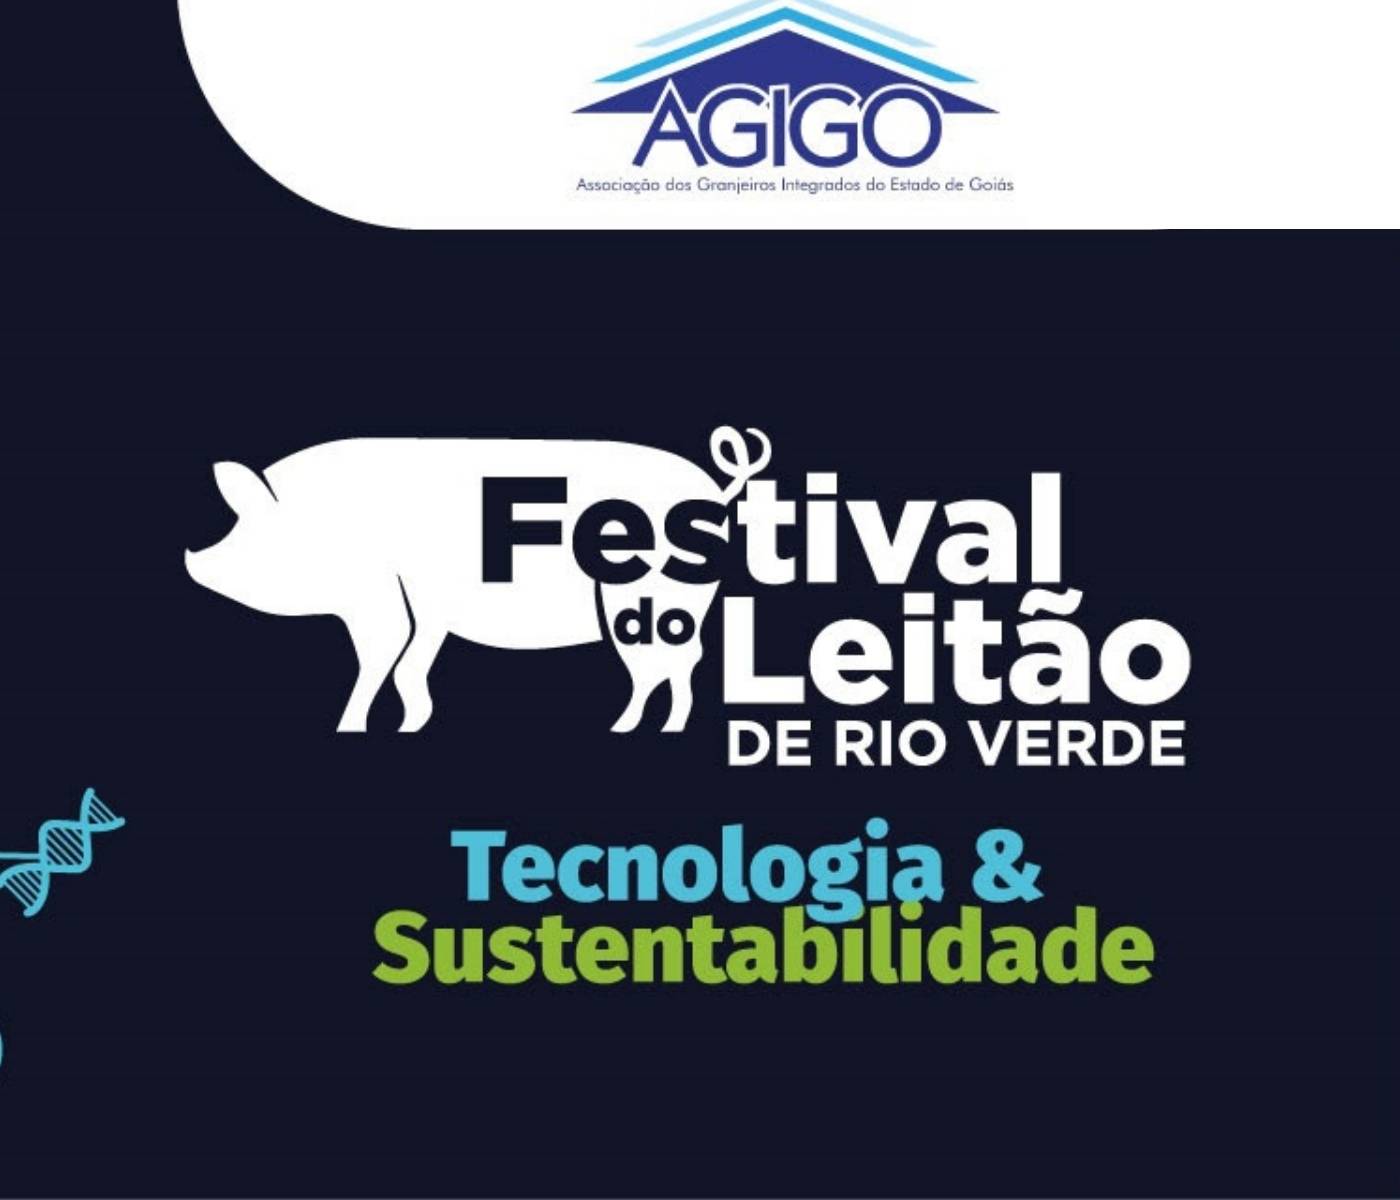 Festival do leitão de Rio Verde: faltam duas semanas